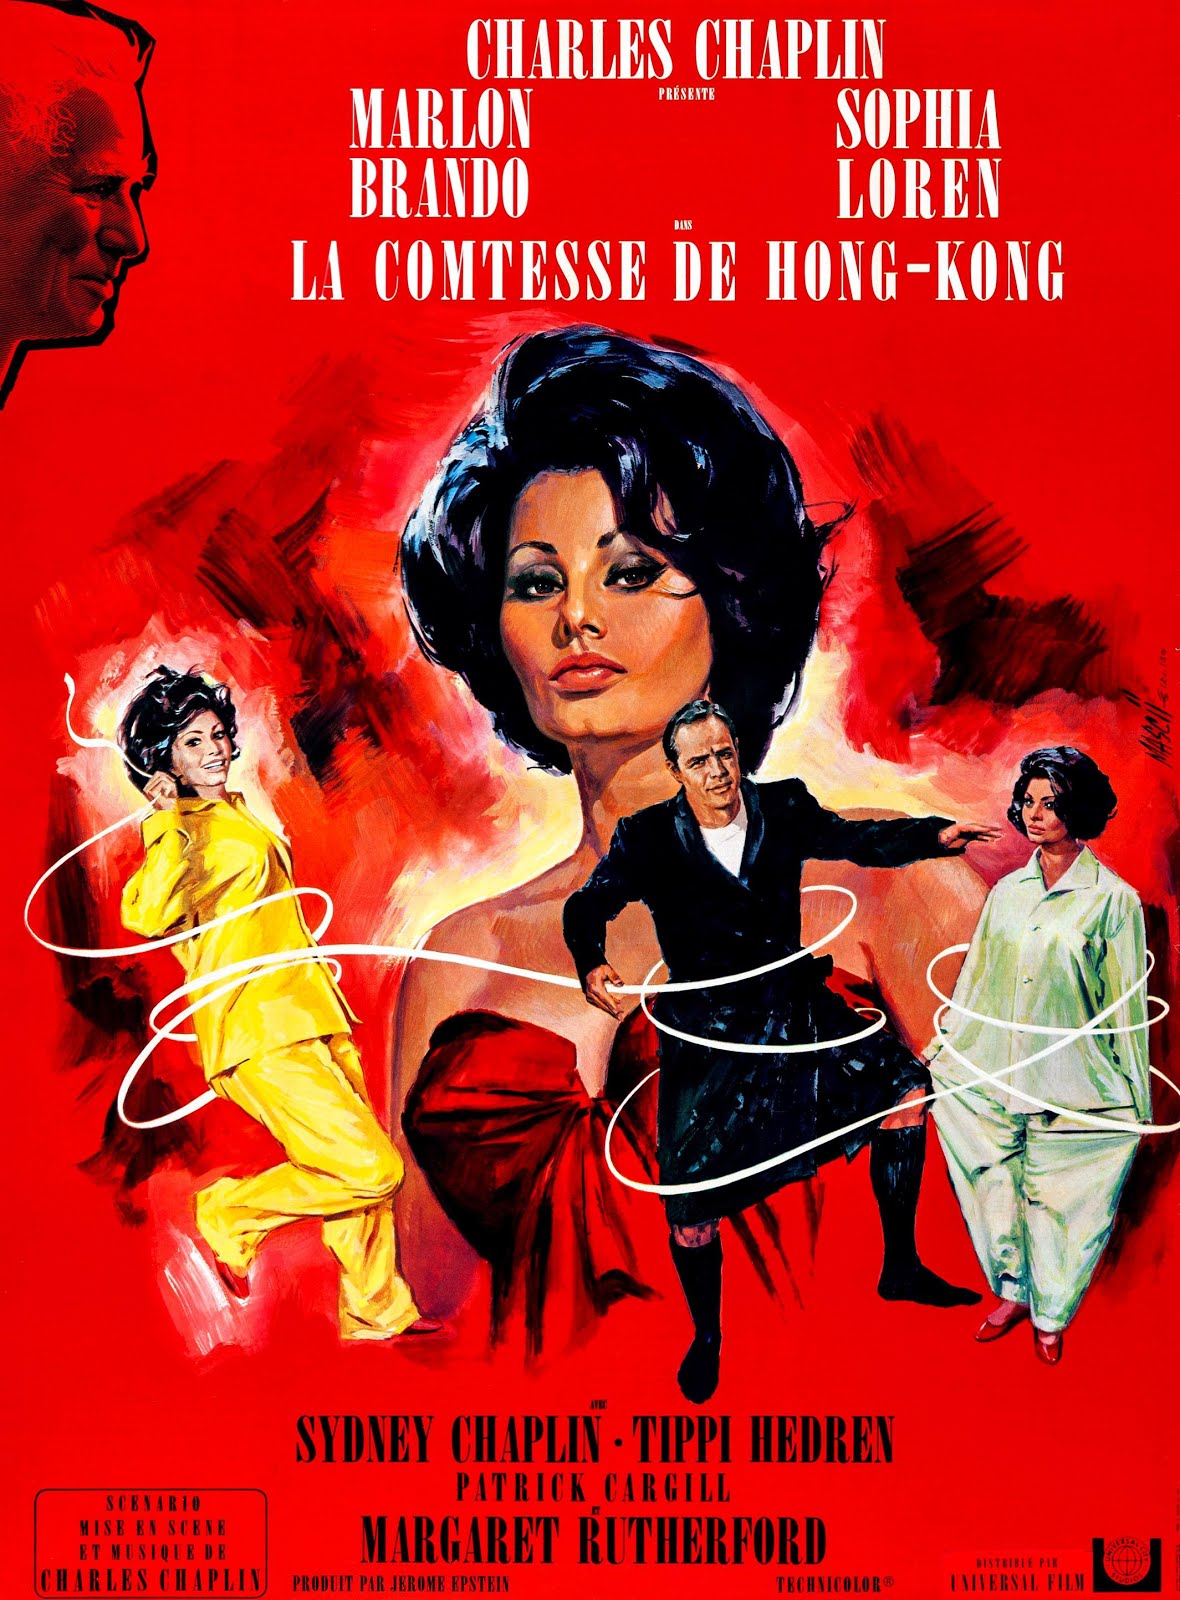 La Comtesse de Hong-Kong (1966) Charles Chaplin - A Countess from Hong Kong